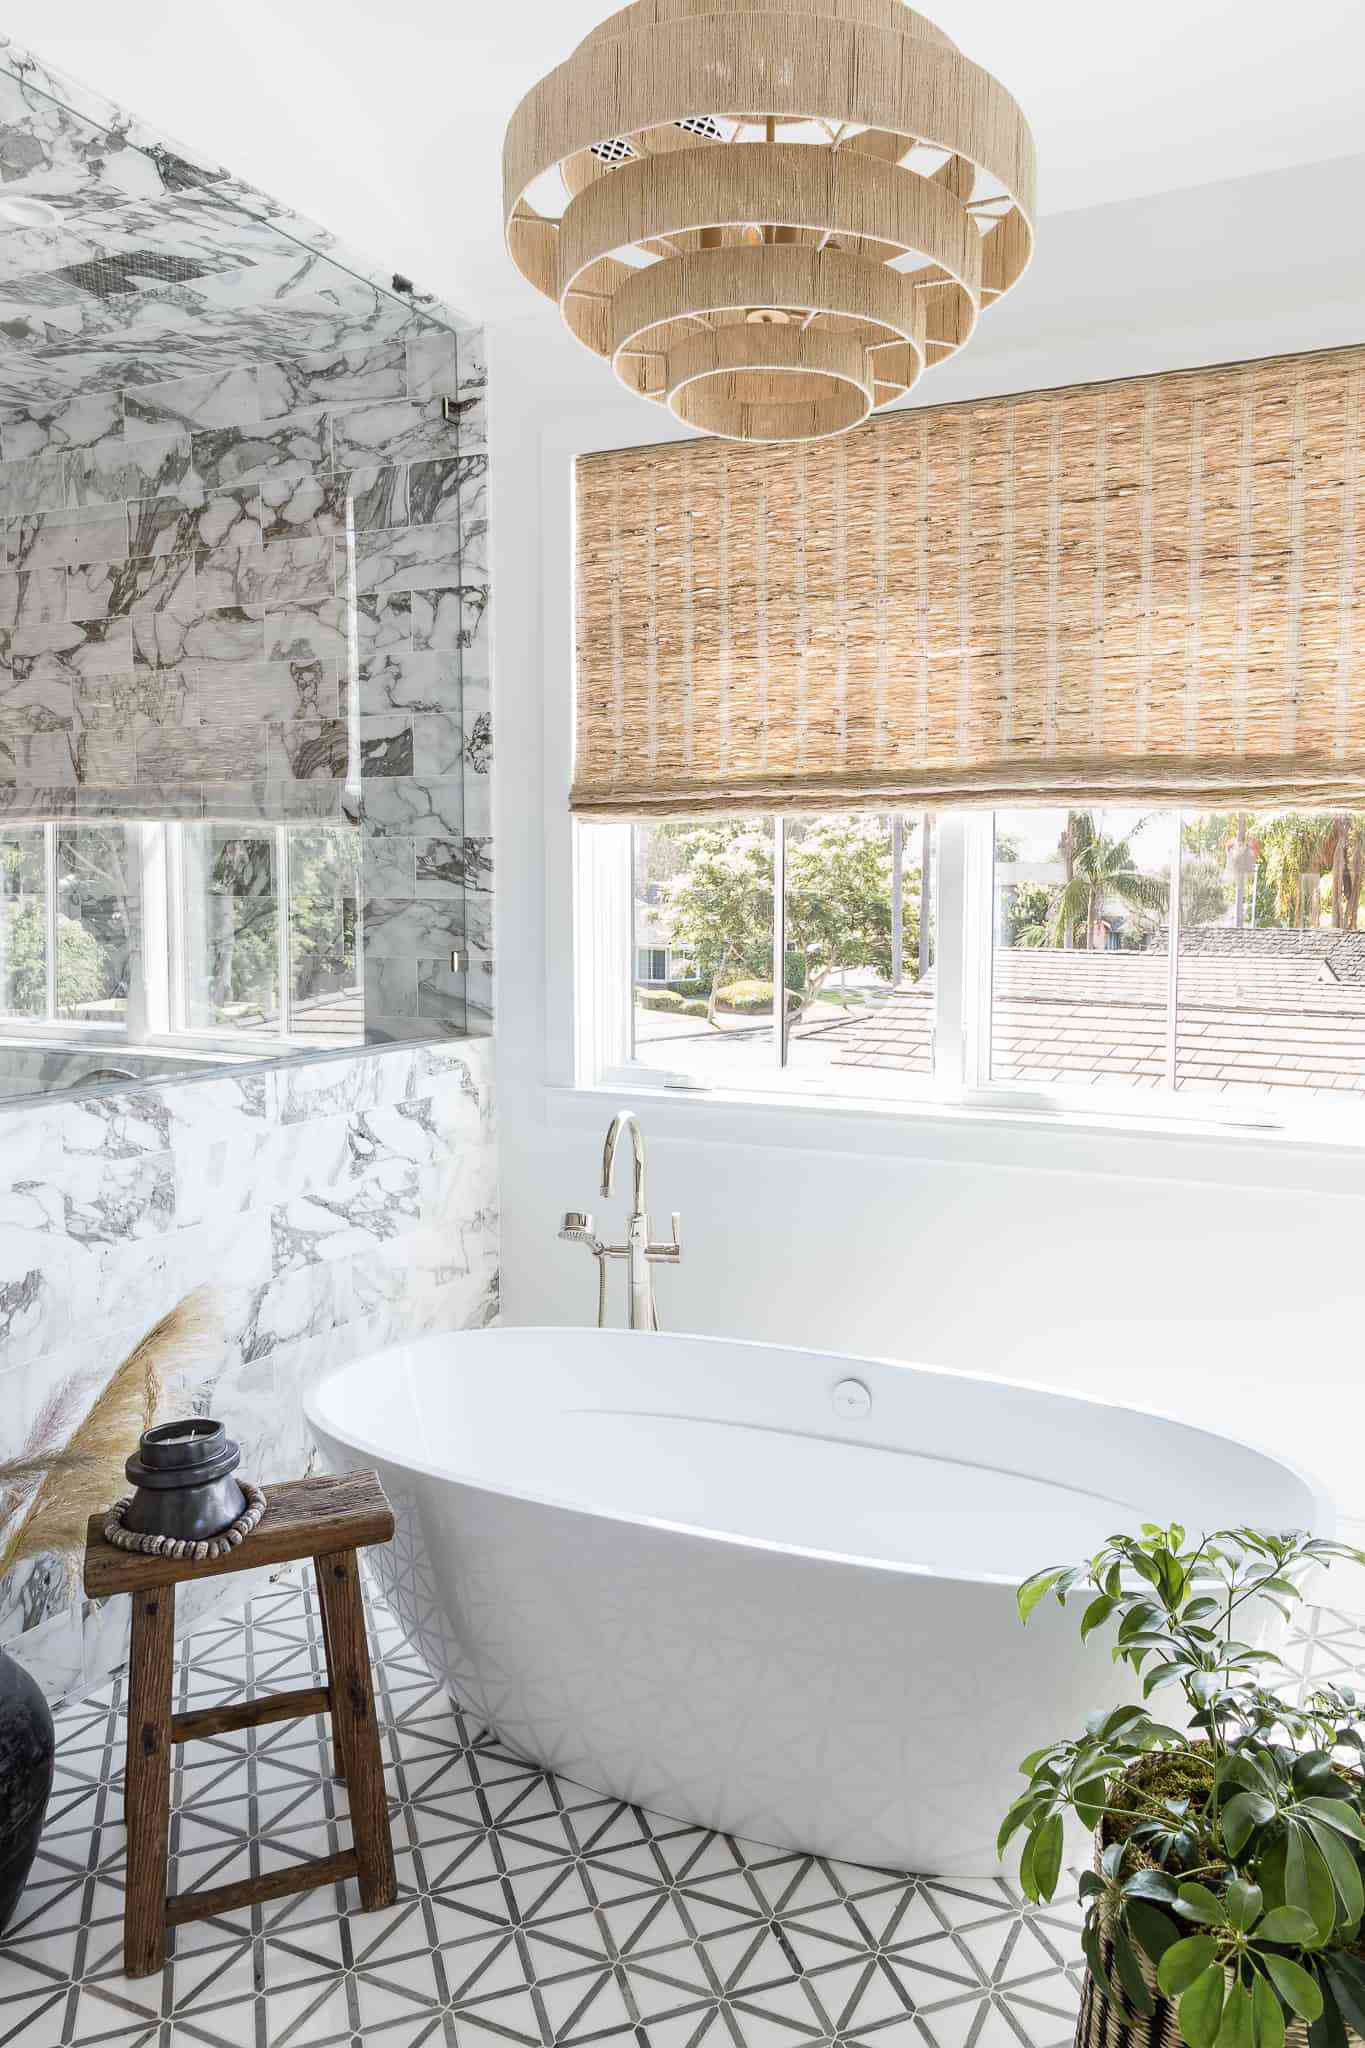 Un baño con paredes de mármol, suelos de baldosas estampadas, una lámpara de araña tejida y persianas tejidas a juego